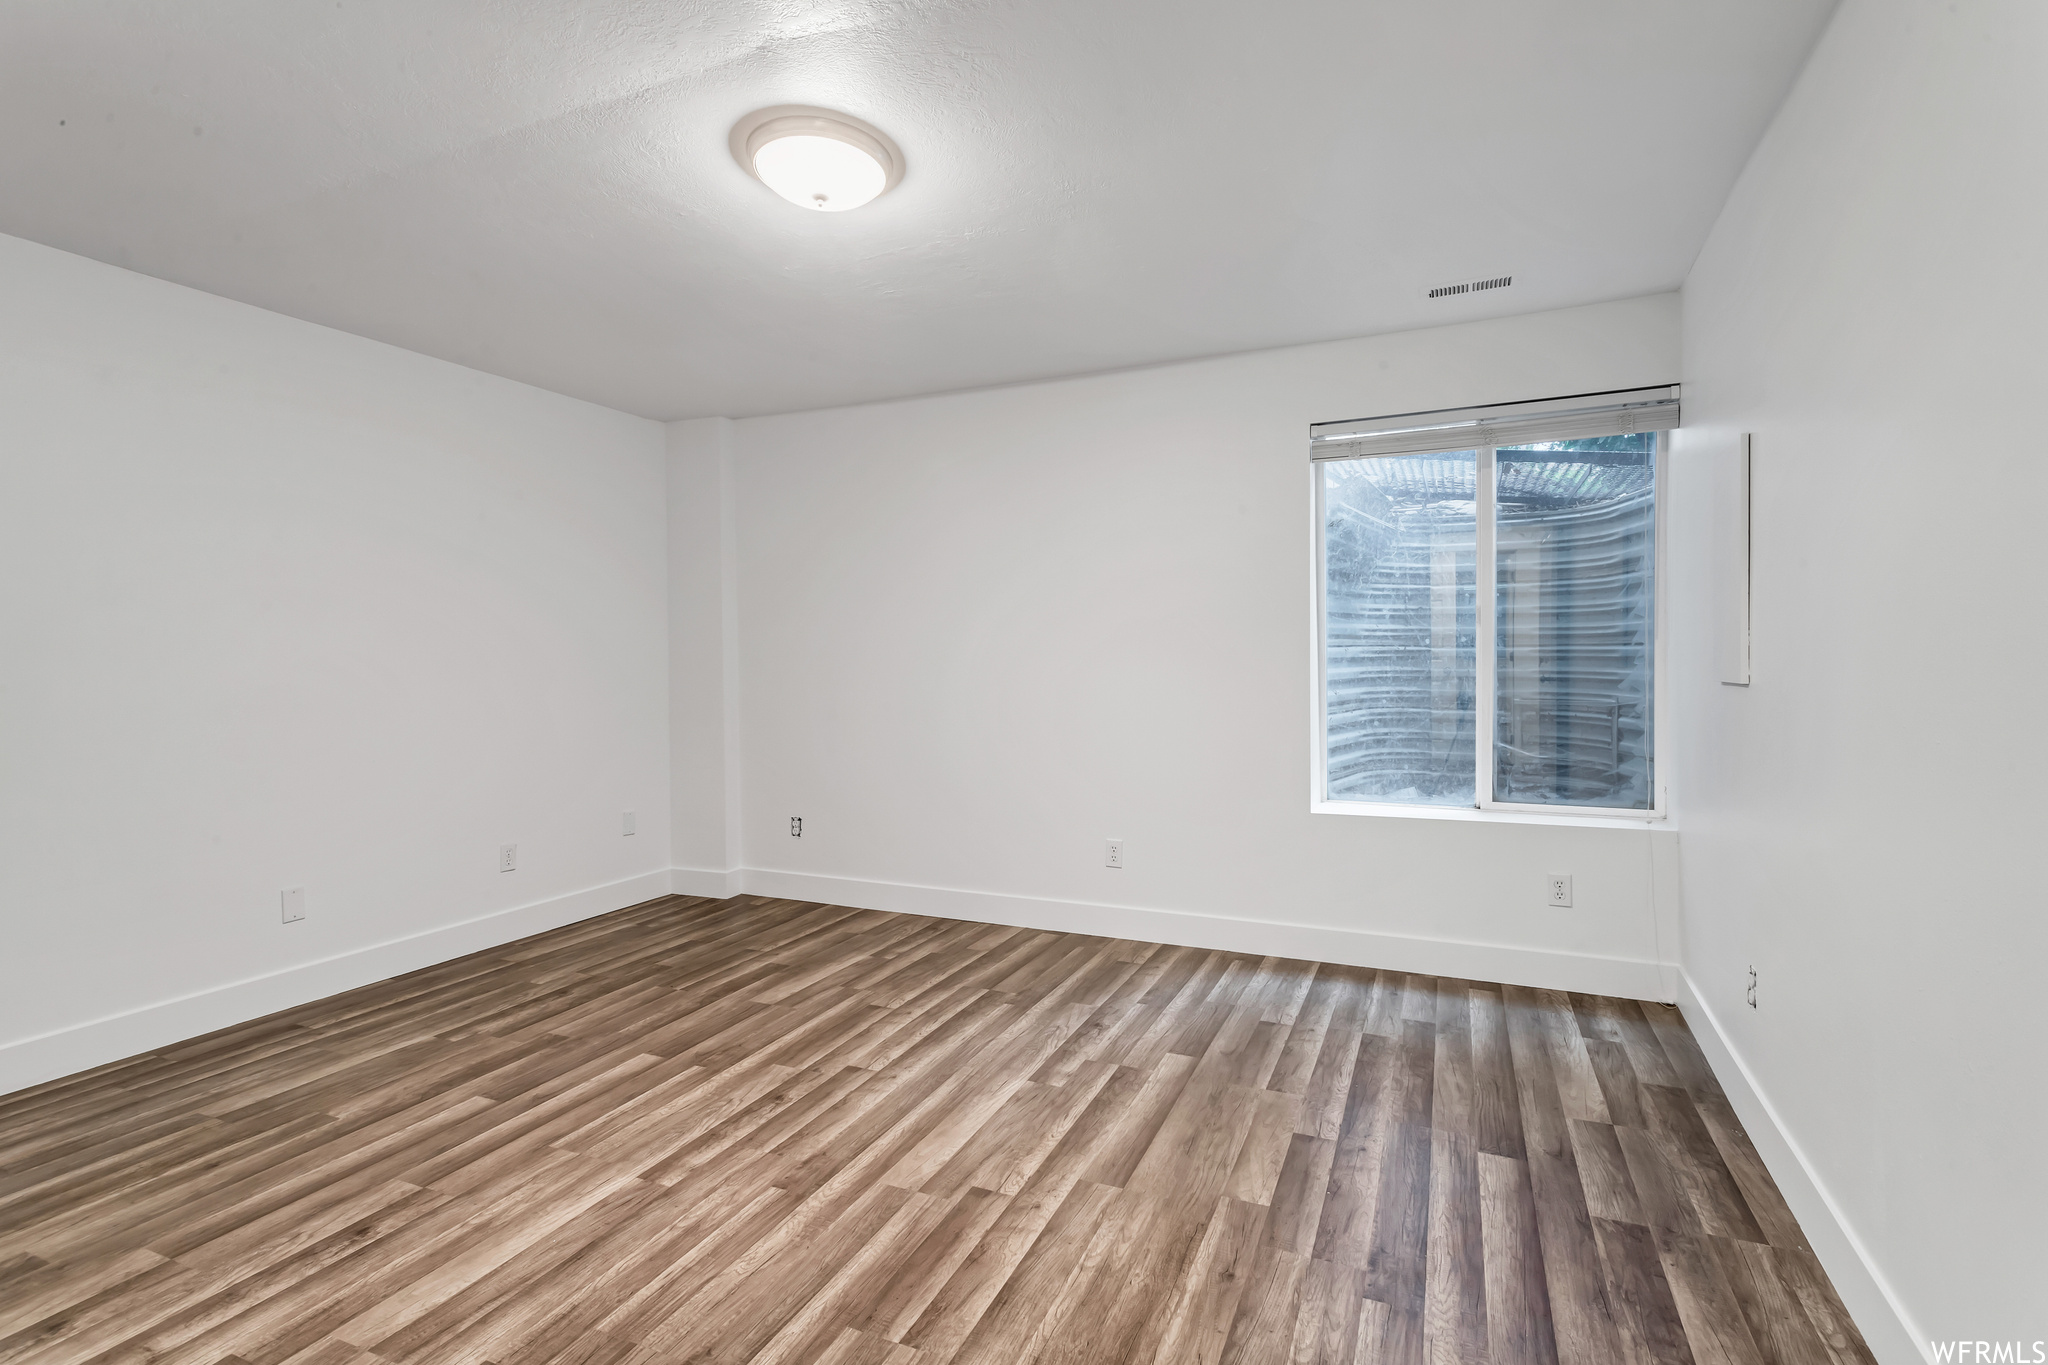 Unfurnished room featuring light hardwood floors